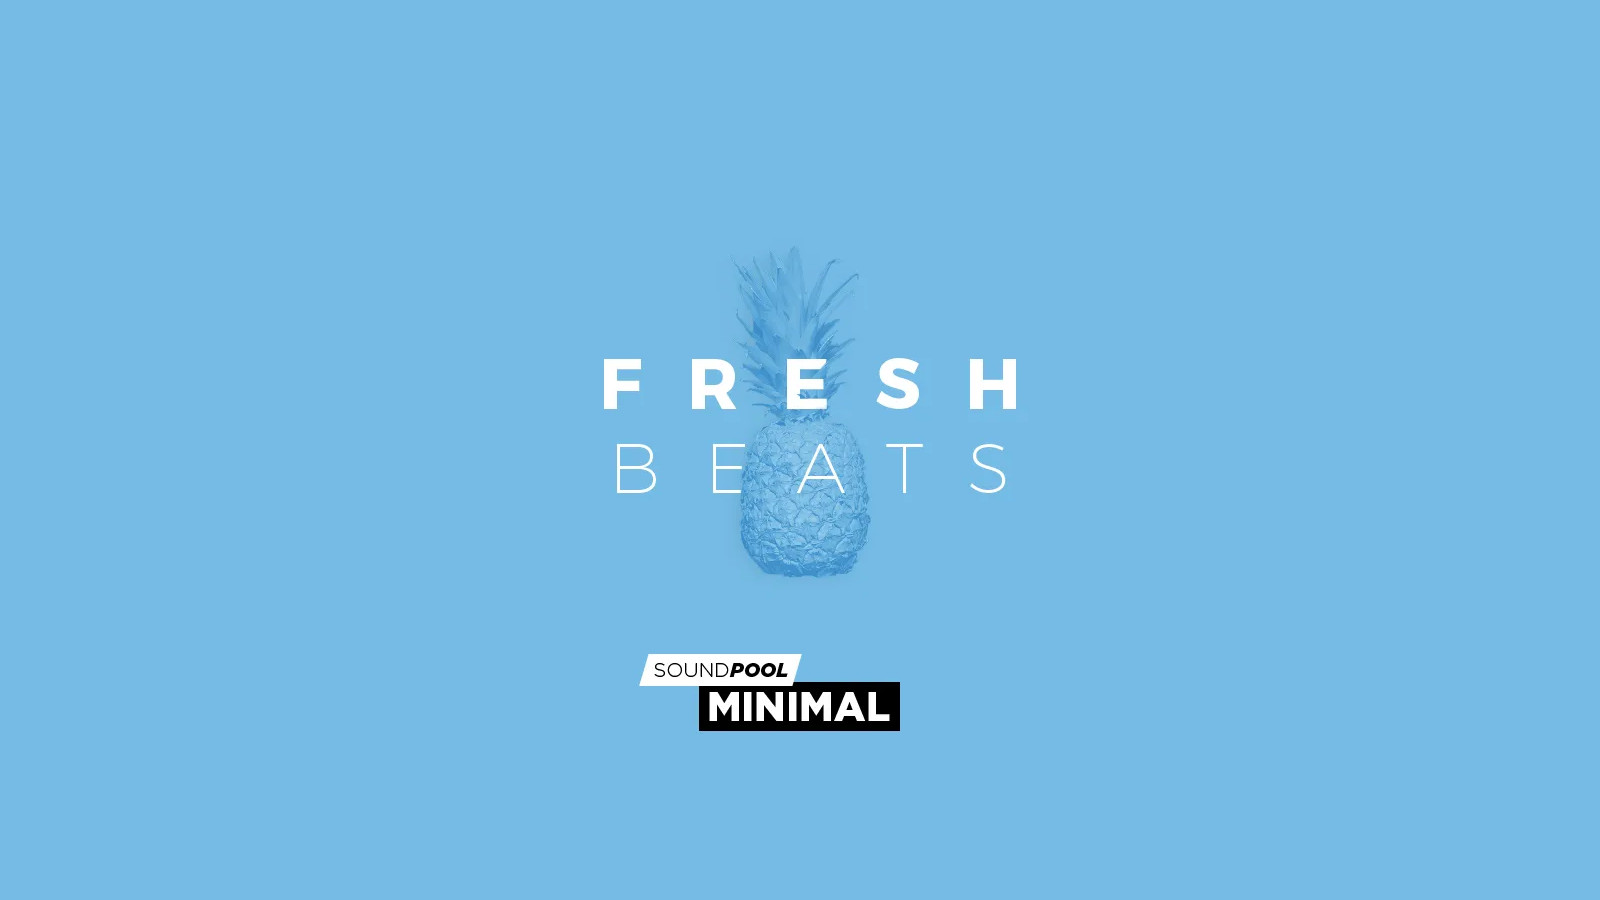 MAGIX Soundpool Fresh Beats ProducerPlanet CD Key 5.65 $